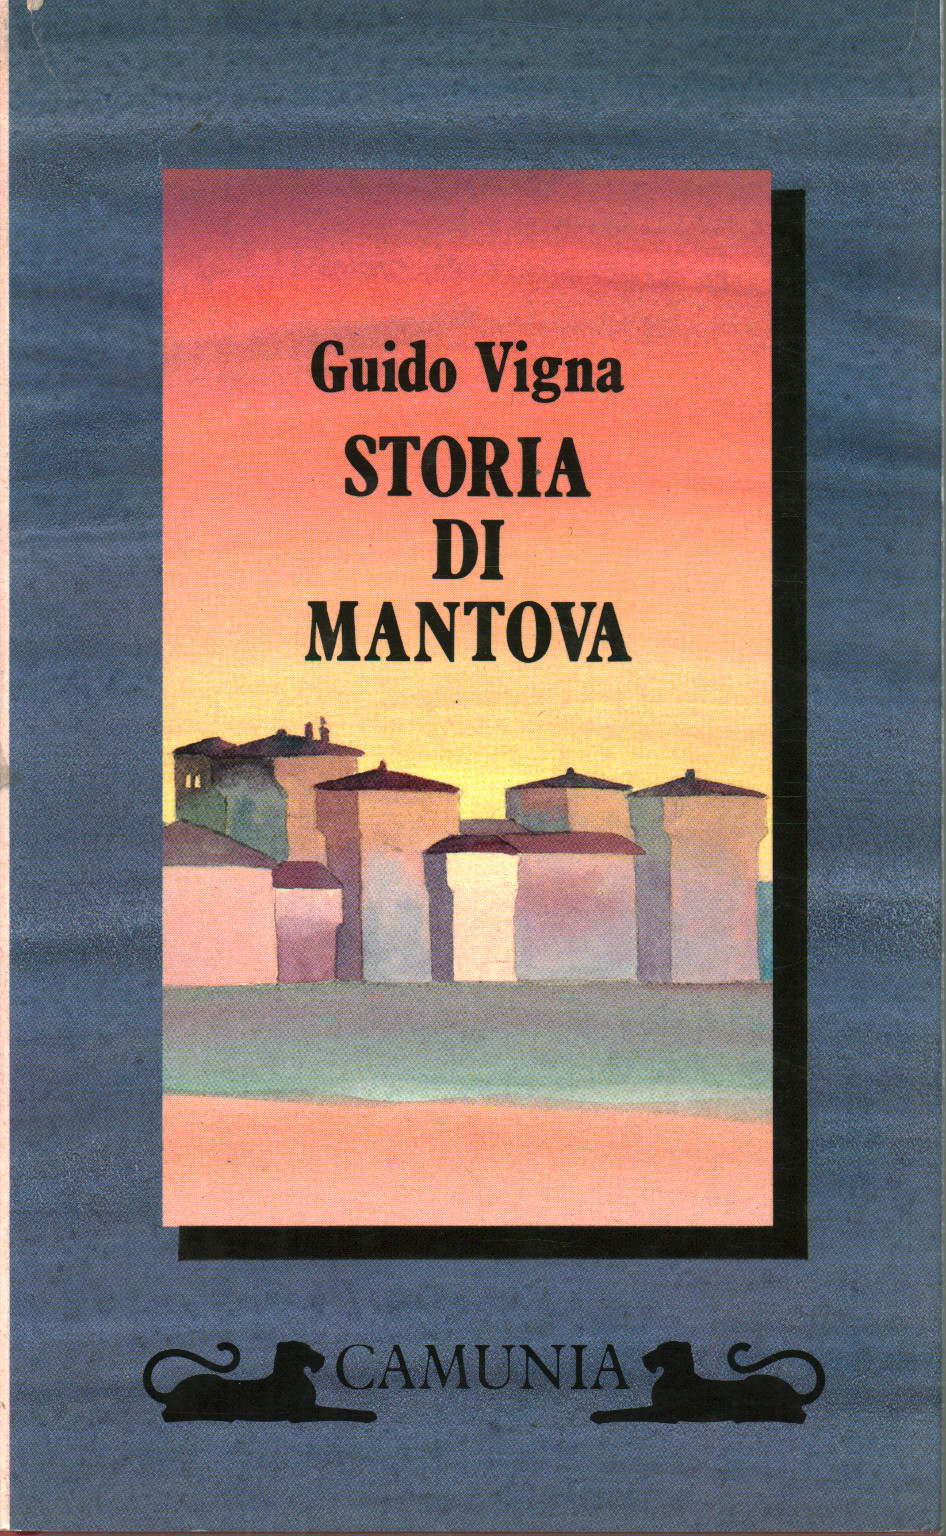 Histoire de Mantoue, Guido Vigna